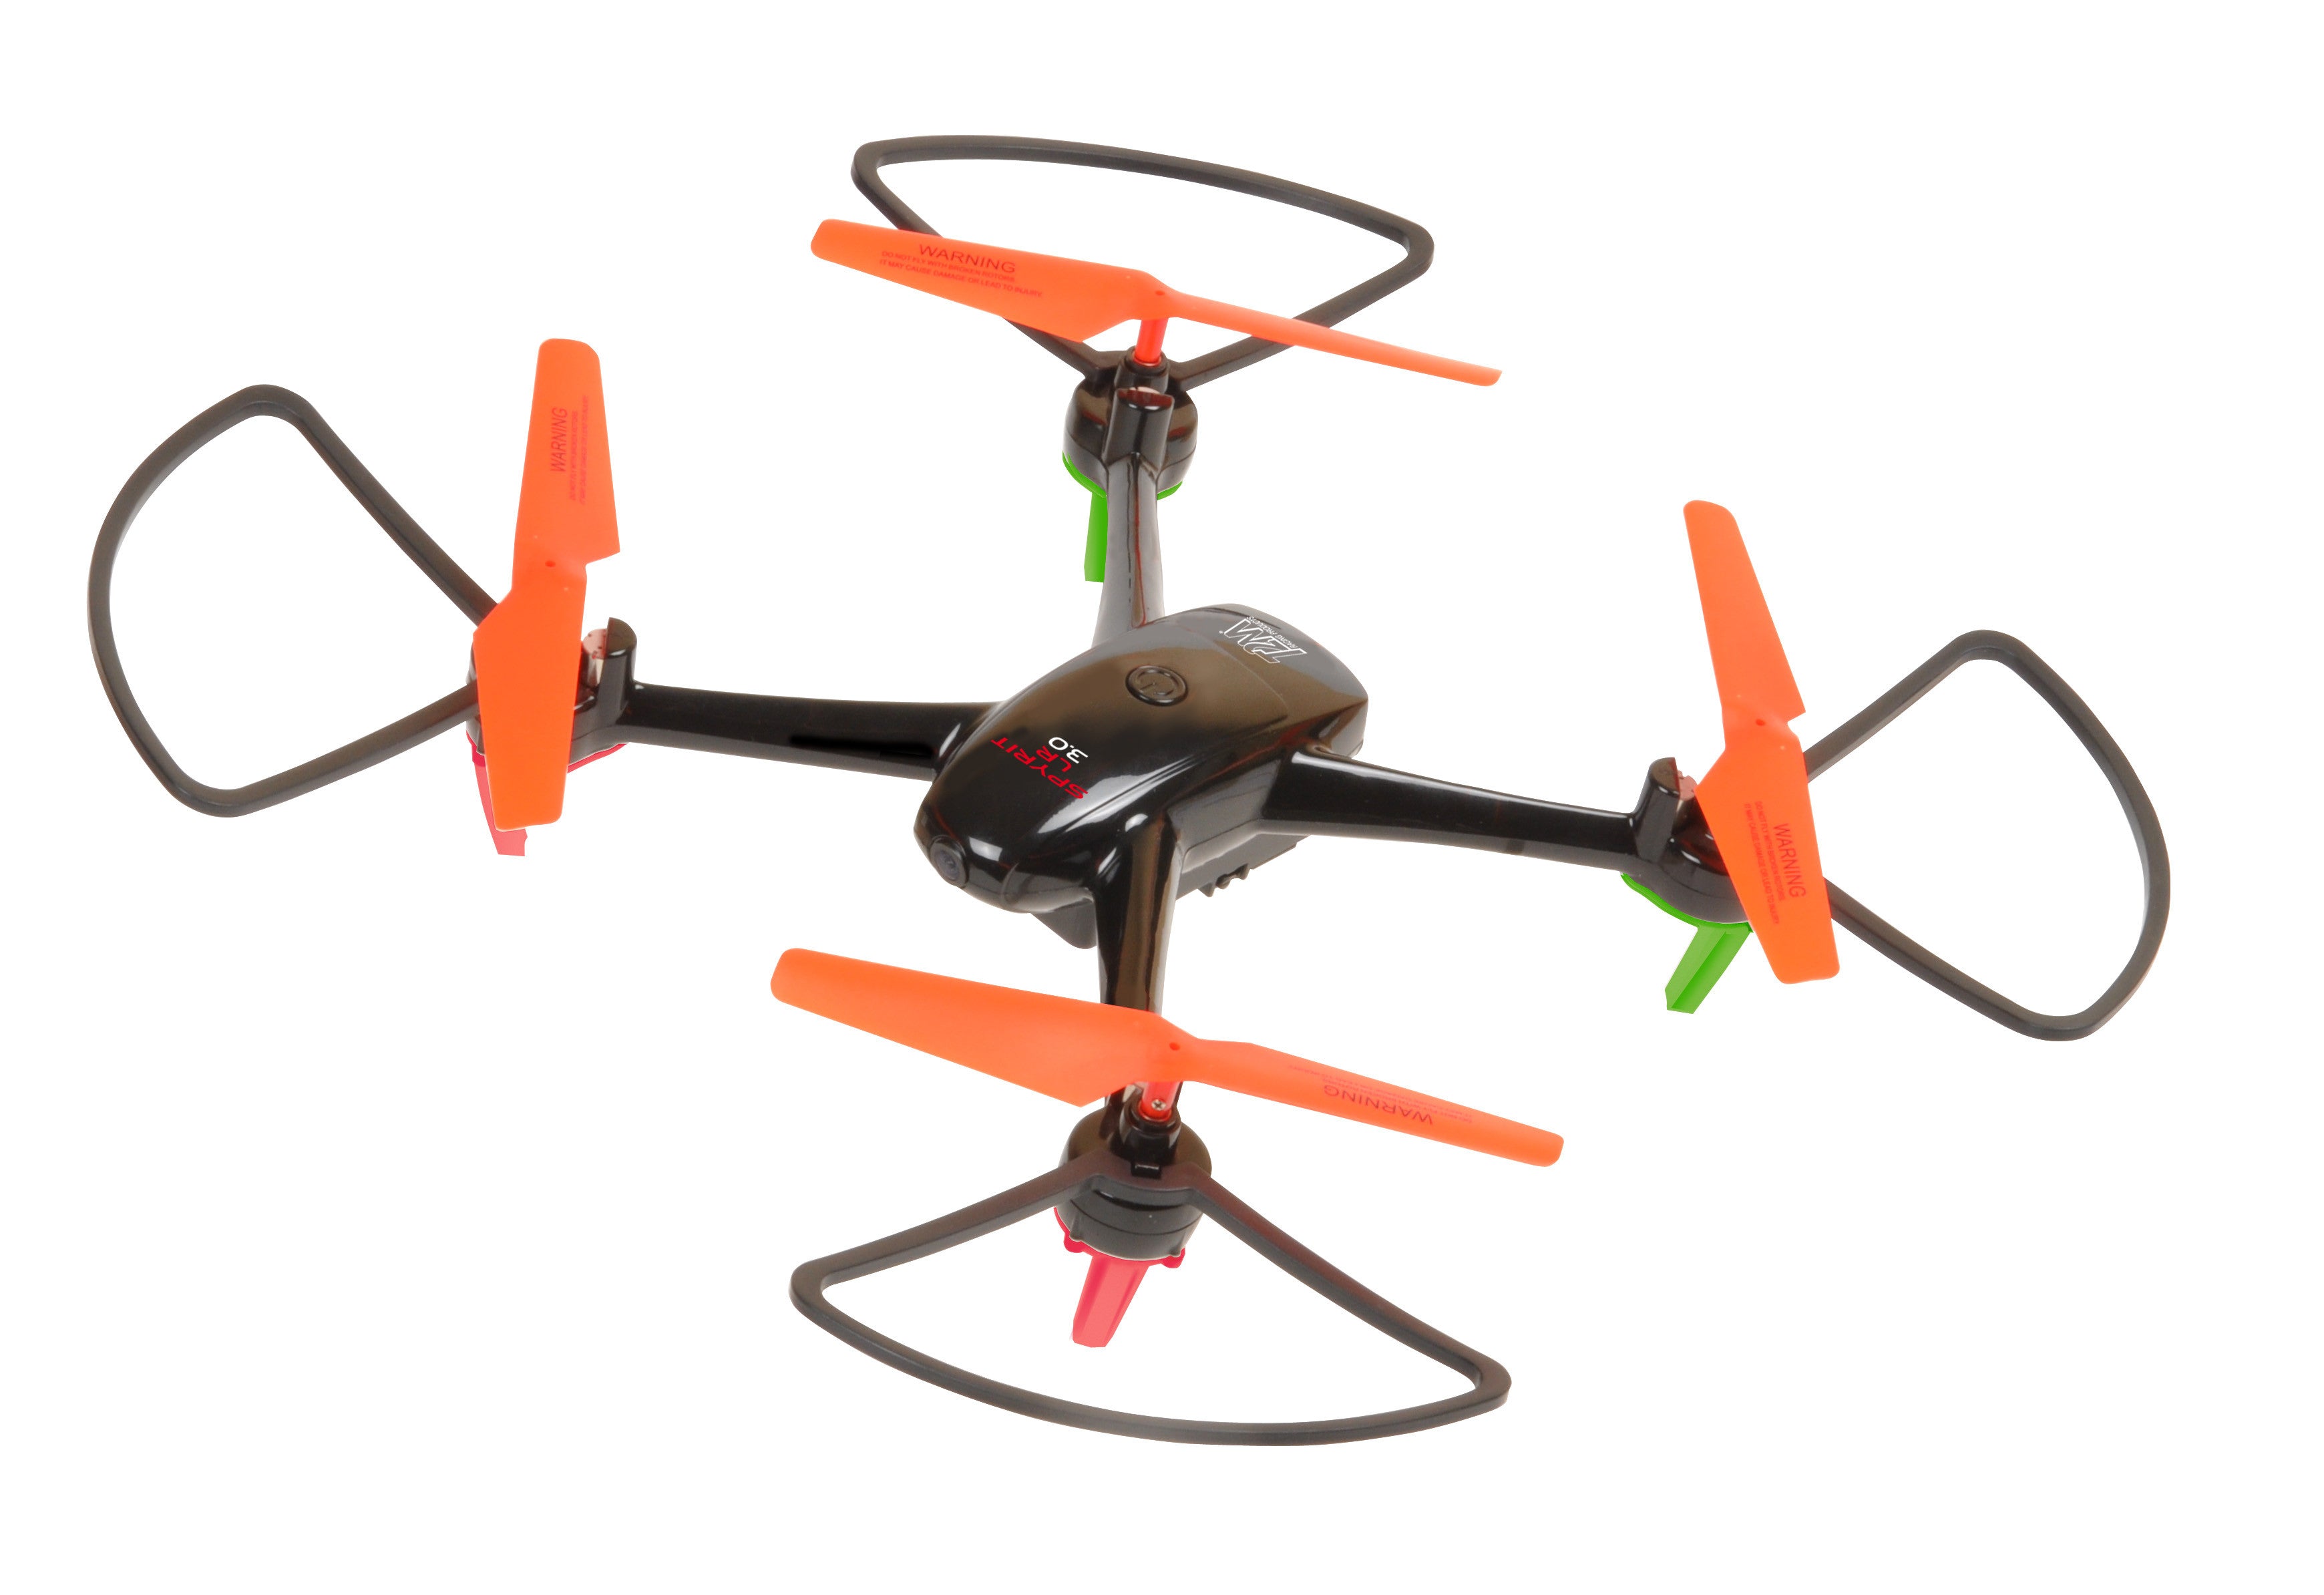 Drone FPV WiFi avec caméra HD 1080p grand angle vidéo en direct RC  quadrirotor avec capteur de gravité de maintien de l'altitude, fonction  RTF, une touche de décollage/atterrissage compatible avec casque VR